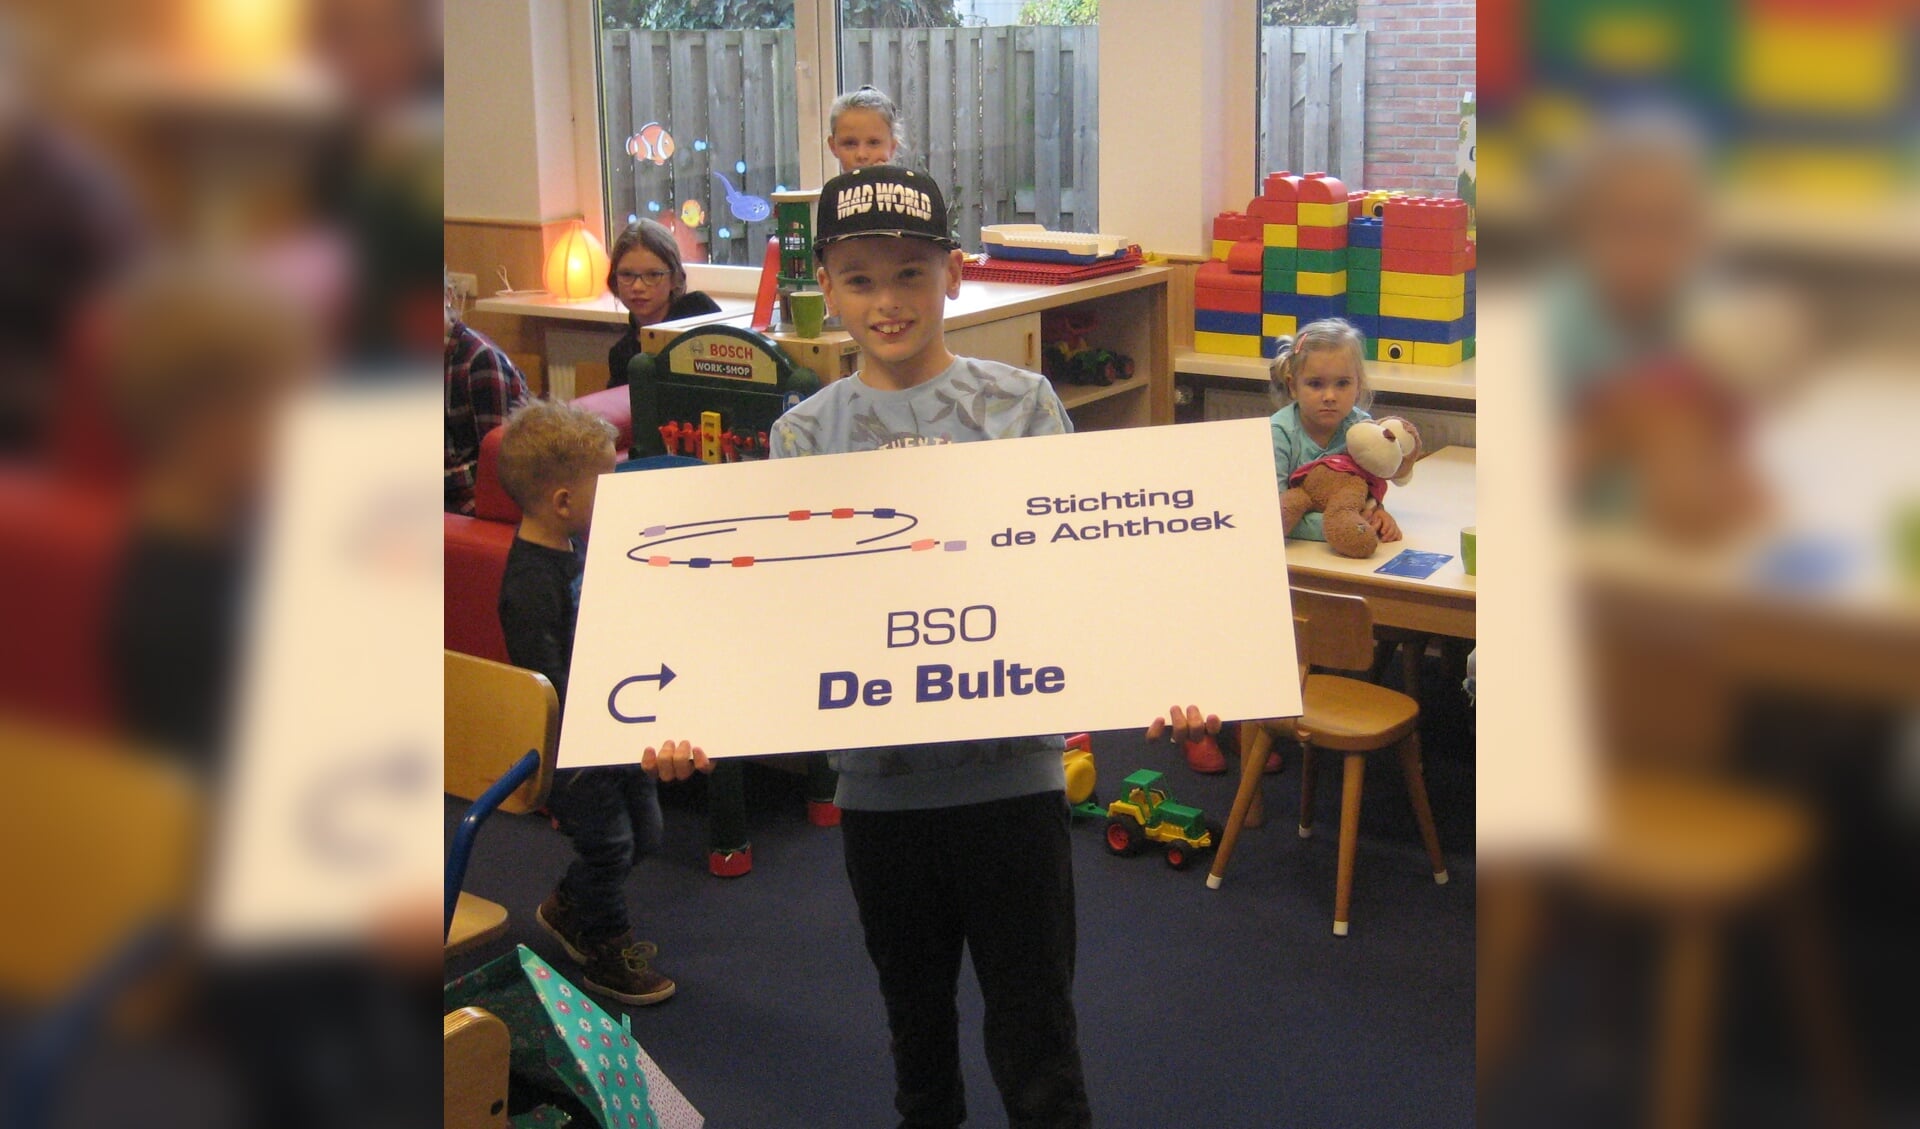 BSO De Bulte is geopend. Foto: PR